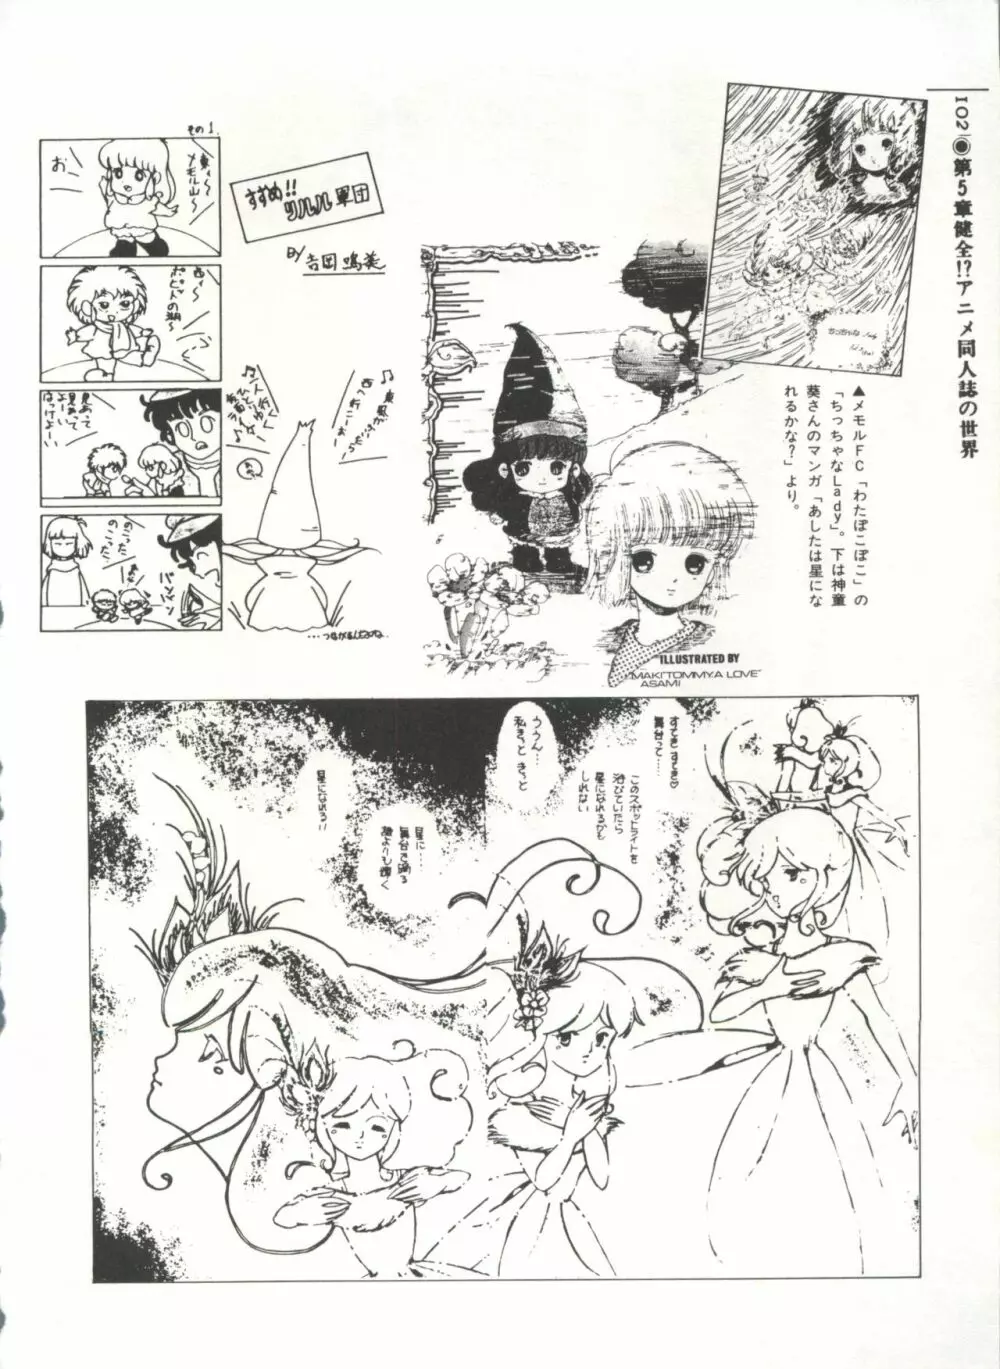 [Anthology] 美少女症候群(2) Lolita syndrome (よろず) 105ページ